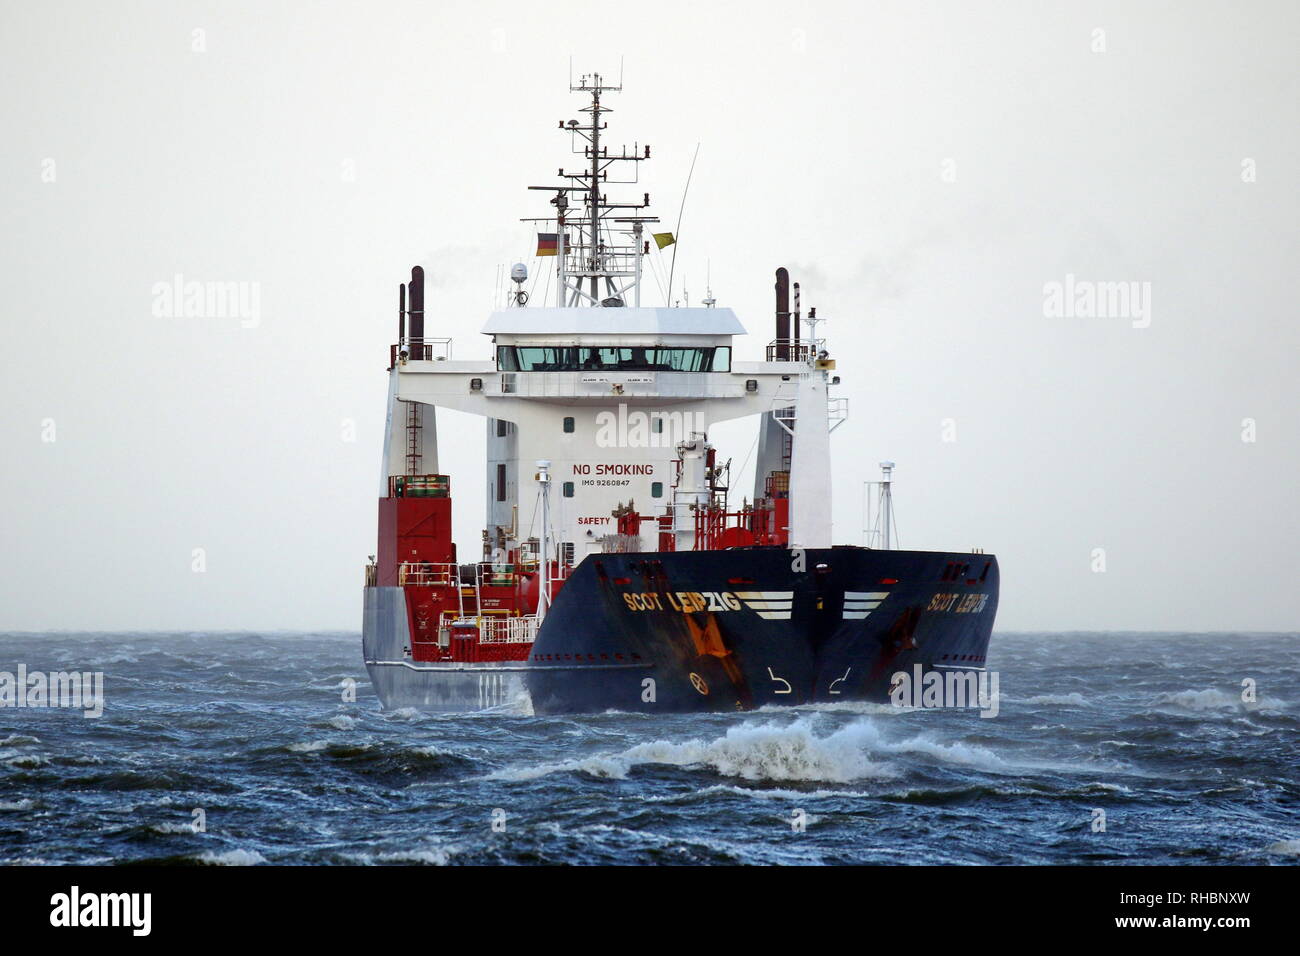 Le pétrolier s'est produit le 1 Scot Leipzig Janvier 2019 Cuxhaven direction Hambourg. Banque D'Images